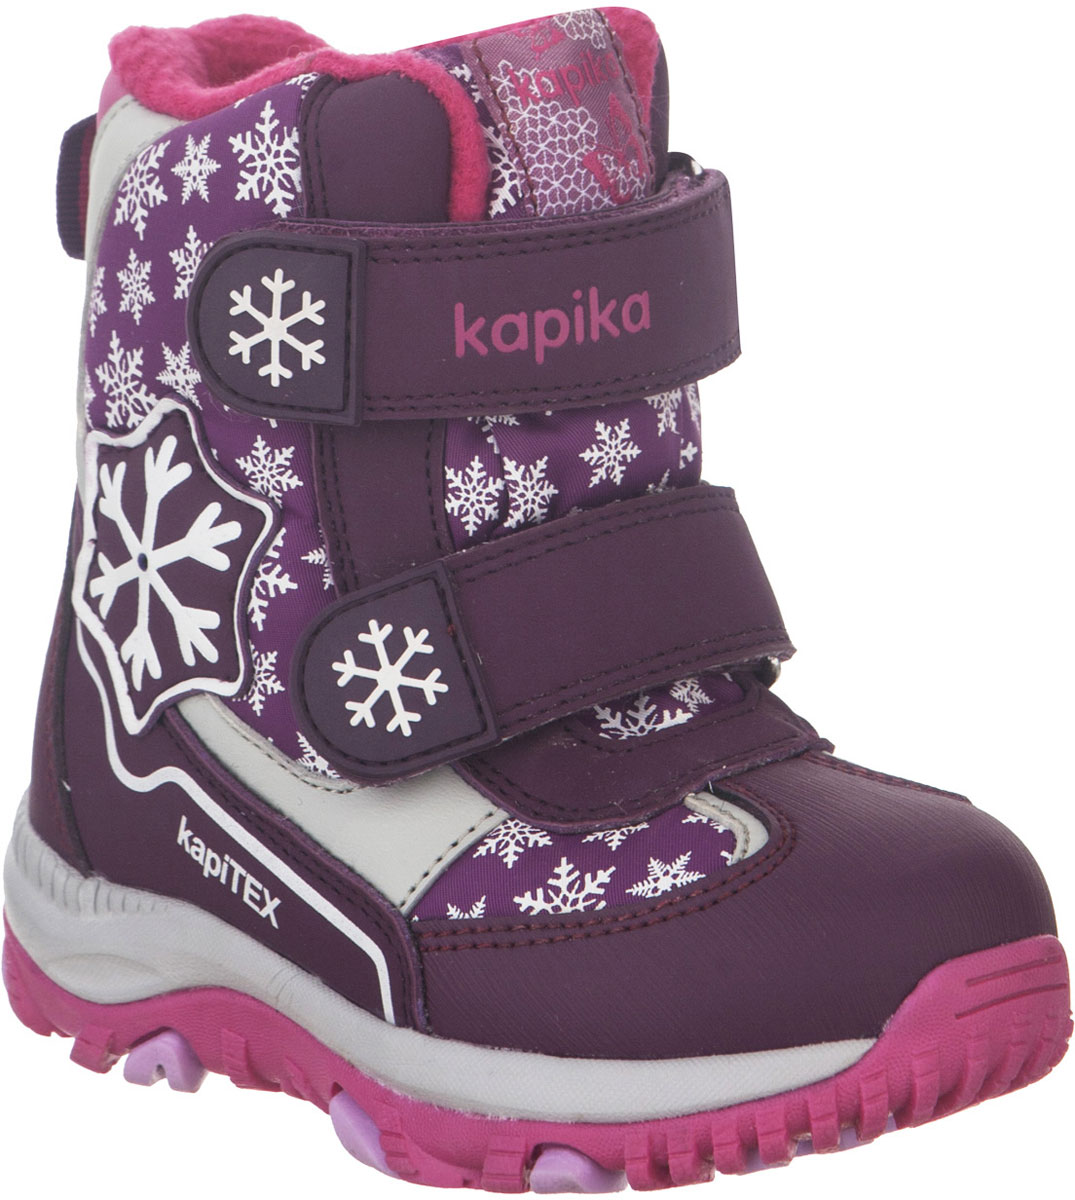 Ботинки для девочки Kapika, цвет: фиолетовый, фуксия. 41226-1. Размер 23